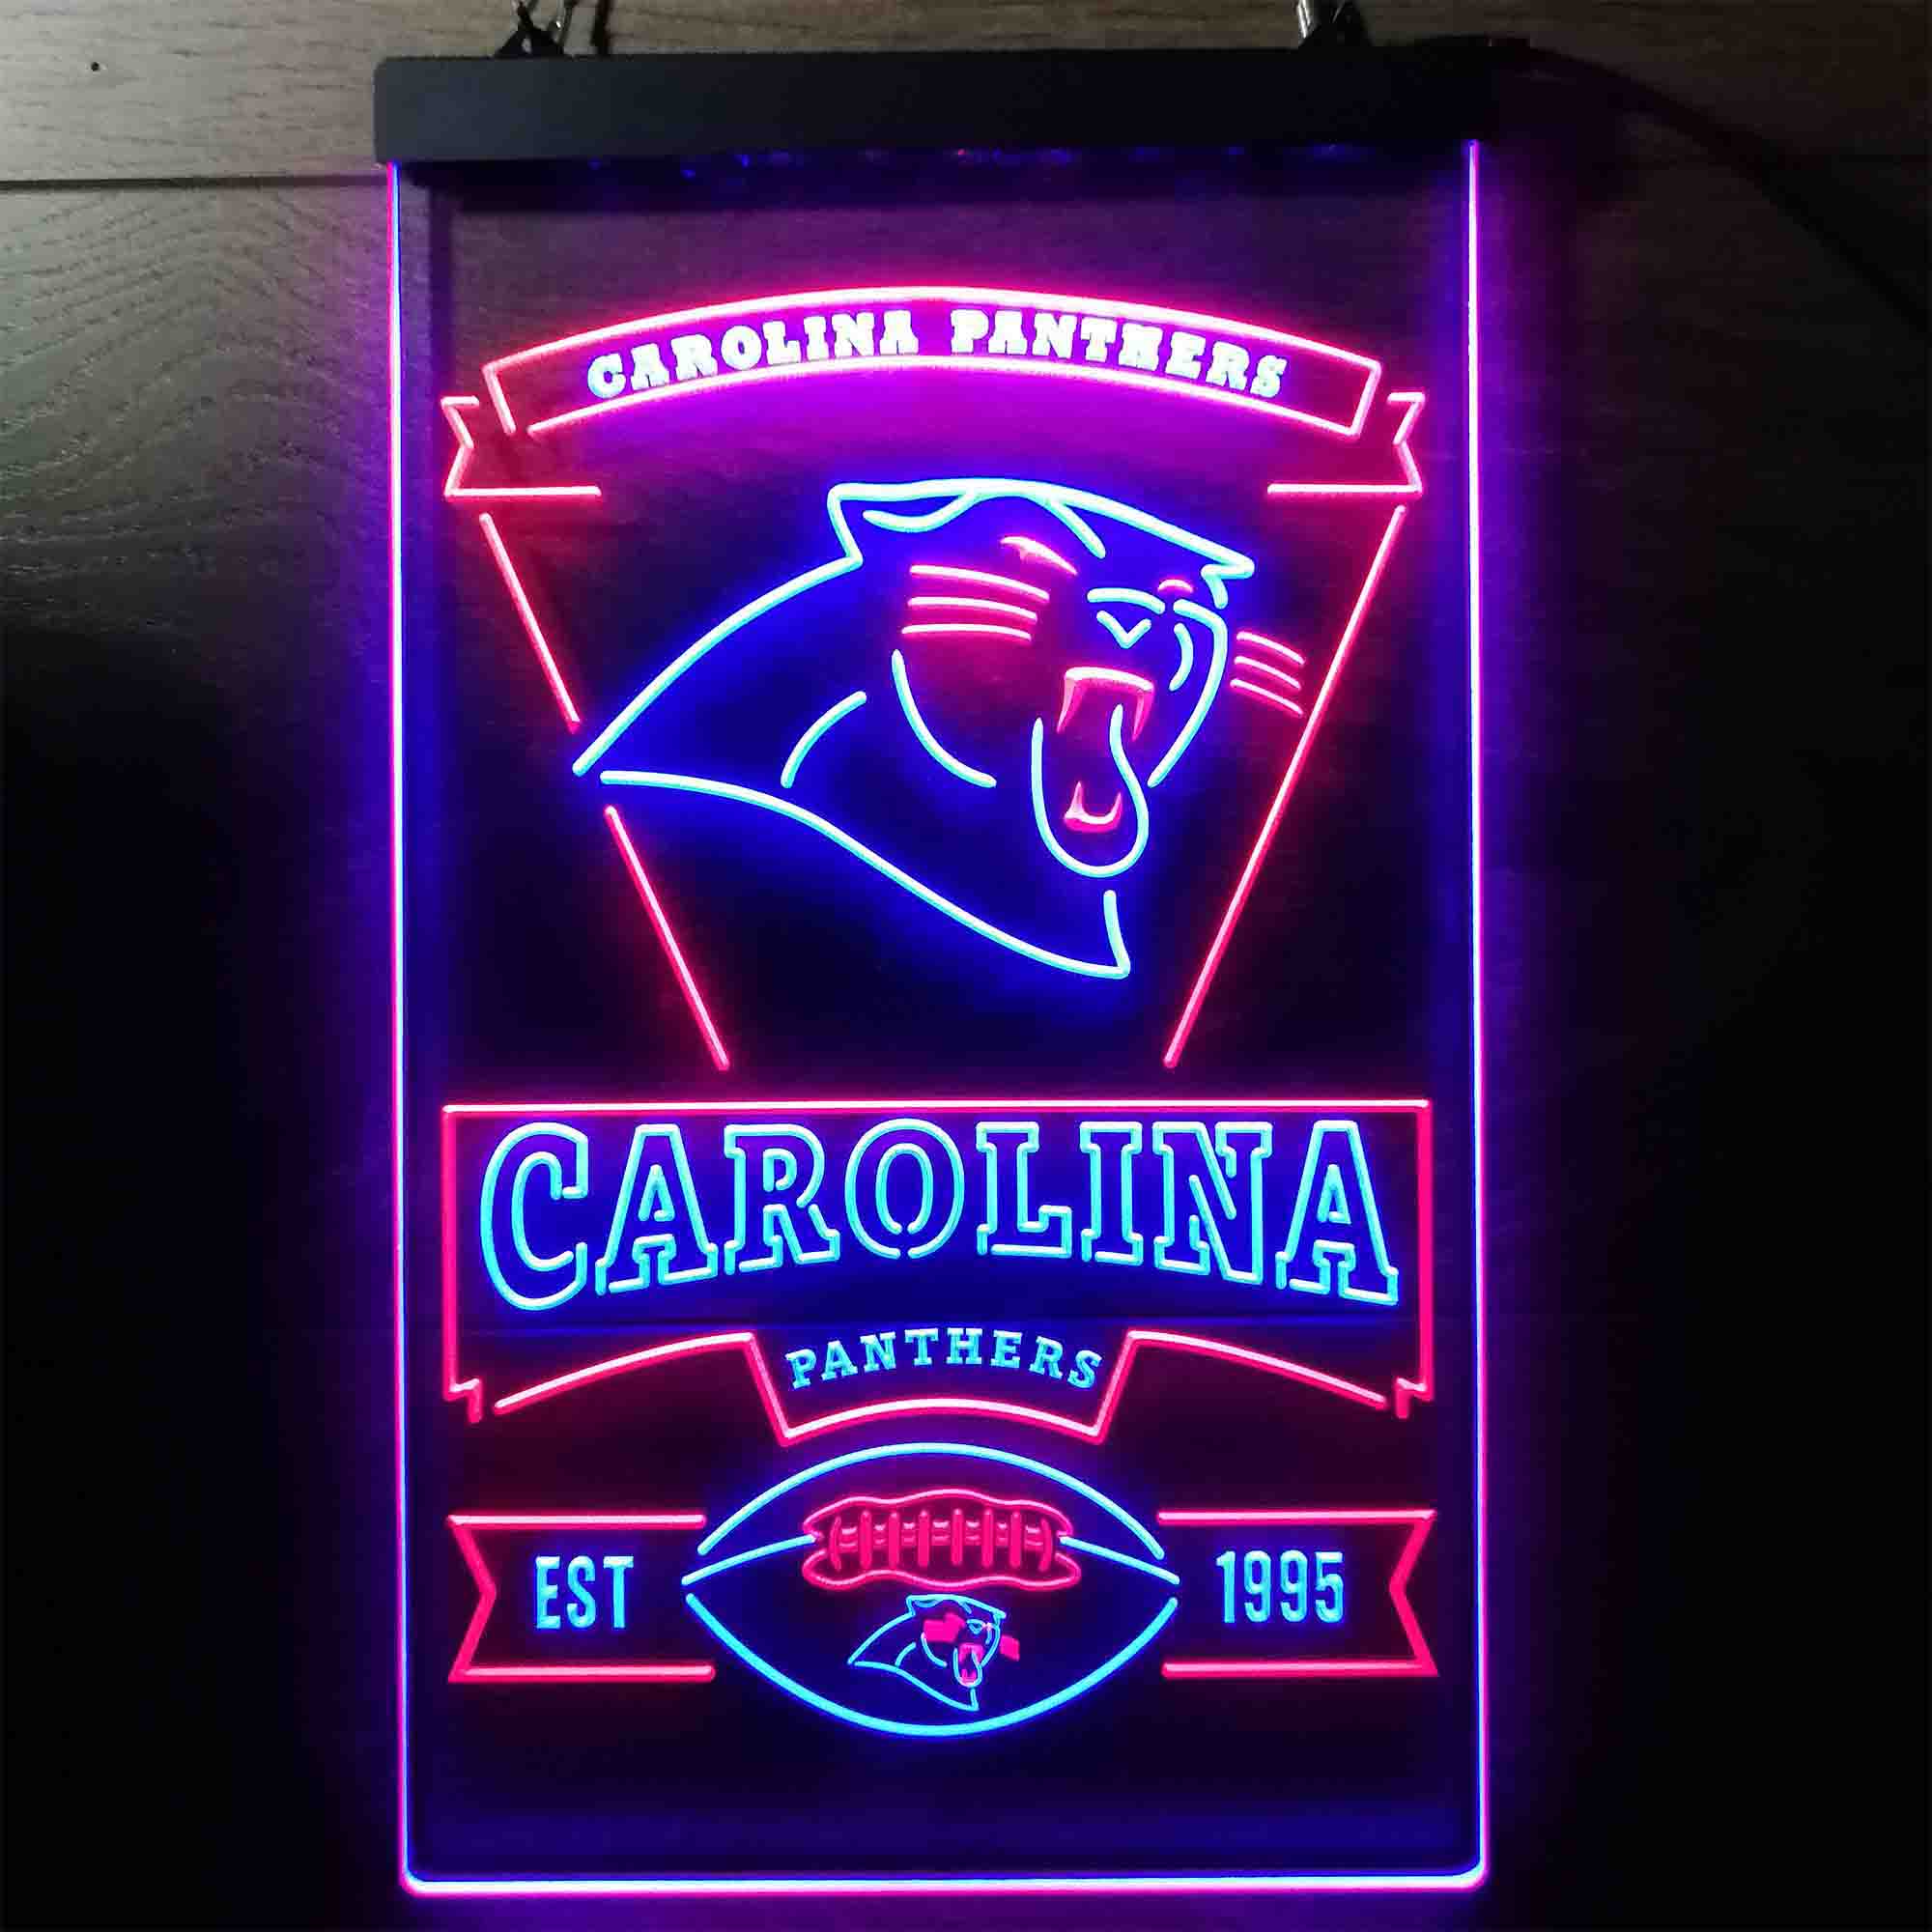 Carolina Panthers Est. 1995 Neon-Like LED Sign